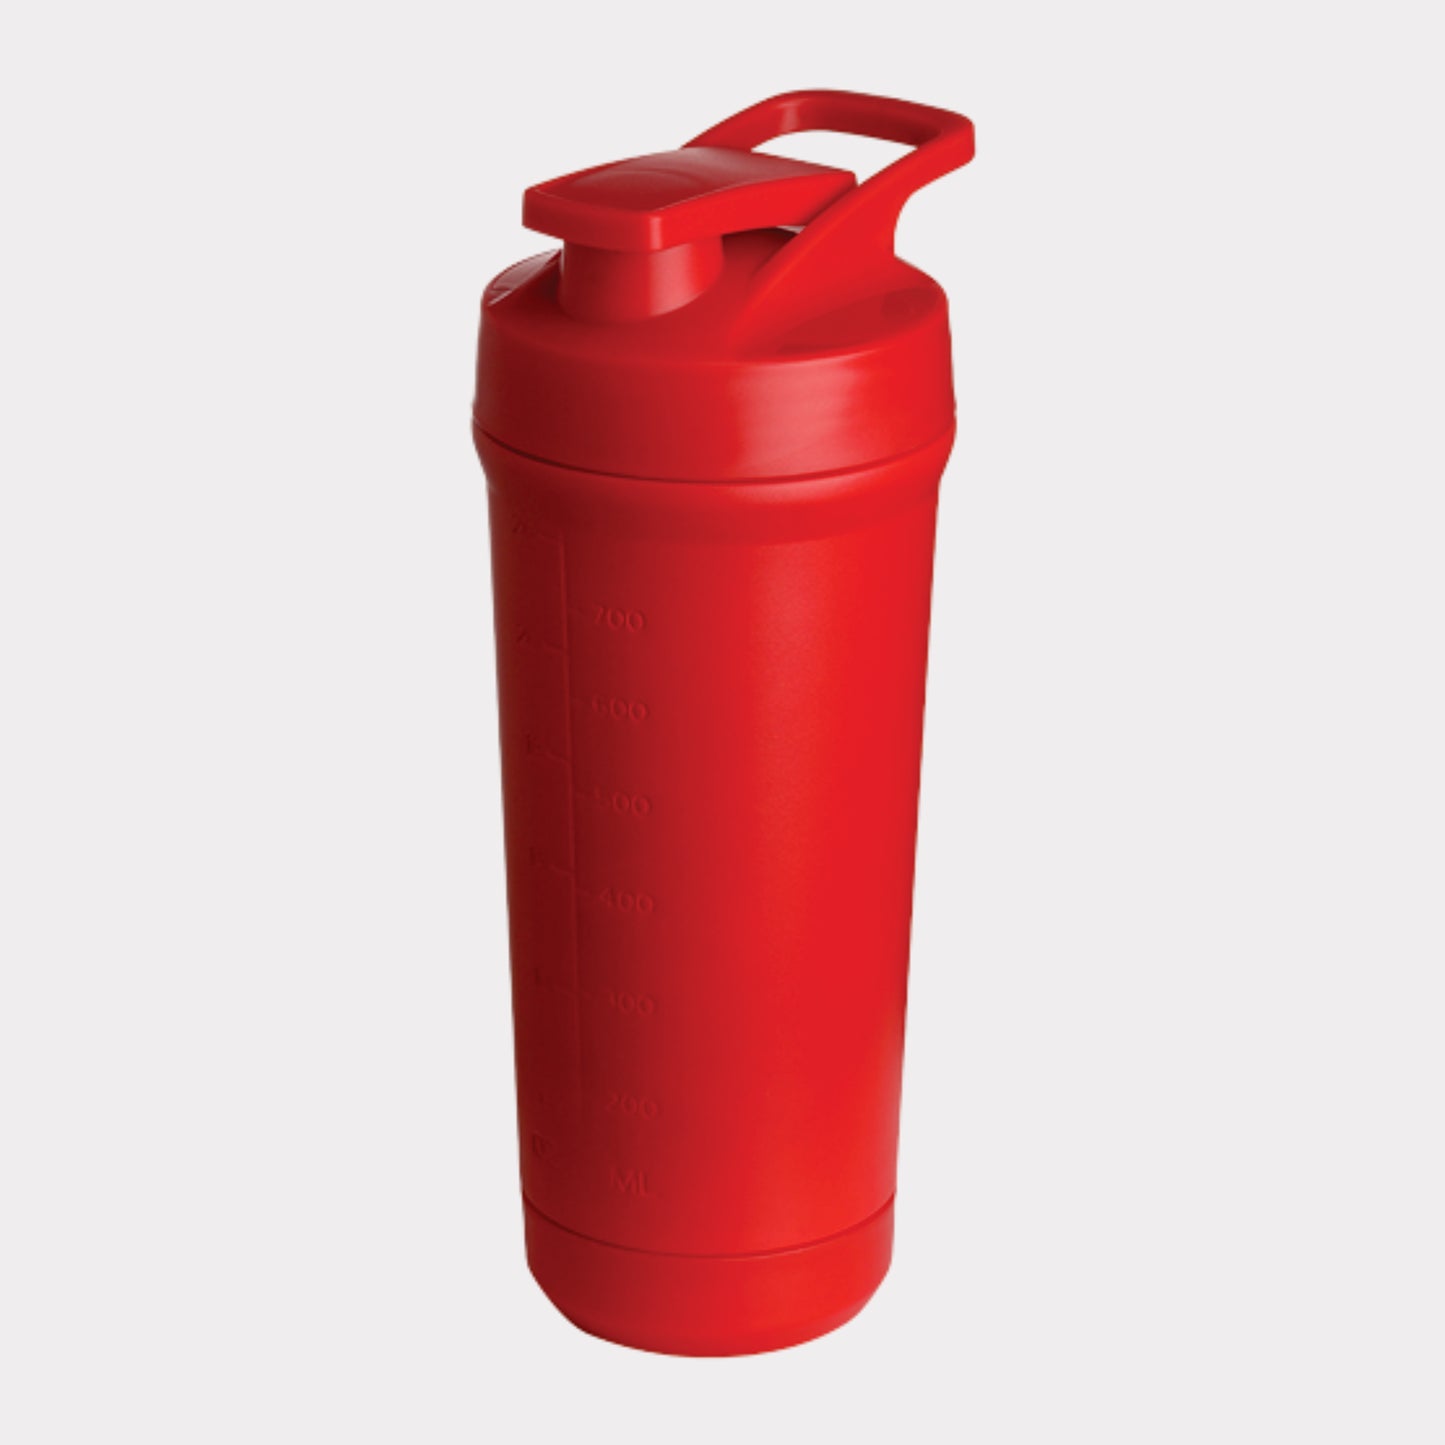 Teemando® Premium Edelstahl Shaker 750ml Kapazität, BPA-frei, auslaufsicherer Deckel, abnehmbarer Shaker-Ball, Füllstandsmarkierung, spülmaschinengeeignet für Proteinshakes, Fitness und Diät, Bodybuilding